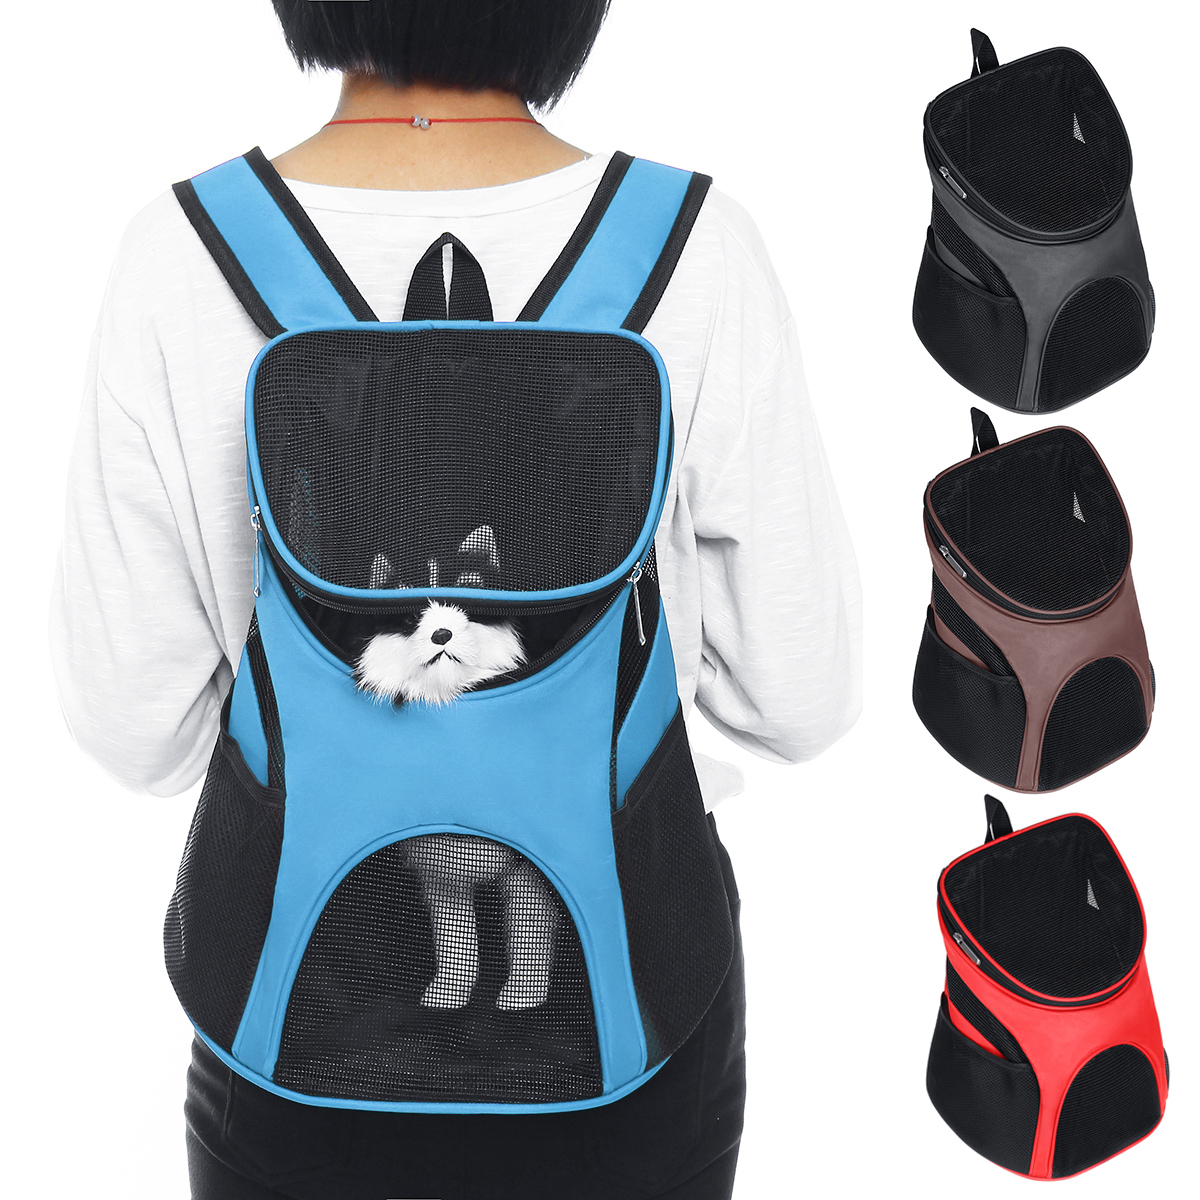 

Переносной Кот Собака Pet с двумя плечами Mesh Сумка Рюкзак для переноски Чехол Чехол